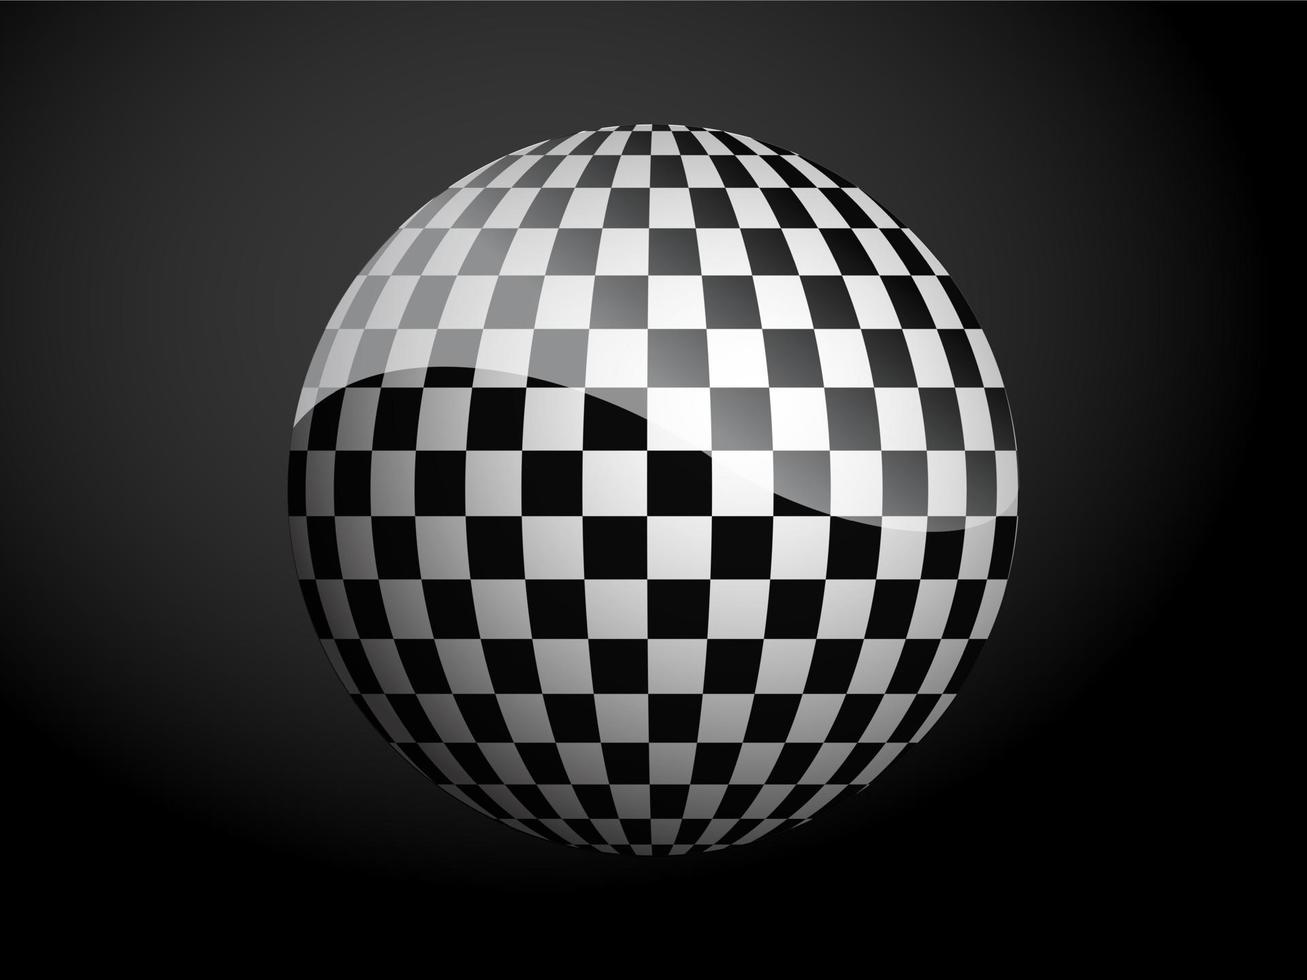 motif abstrait couverture boule 3d noir et blanc. illustration vectorielle sur fond sombre. vecteur